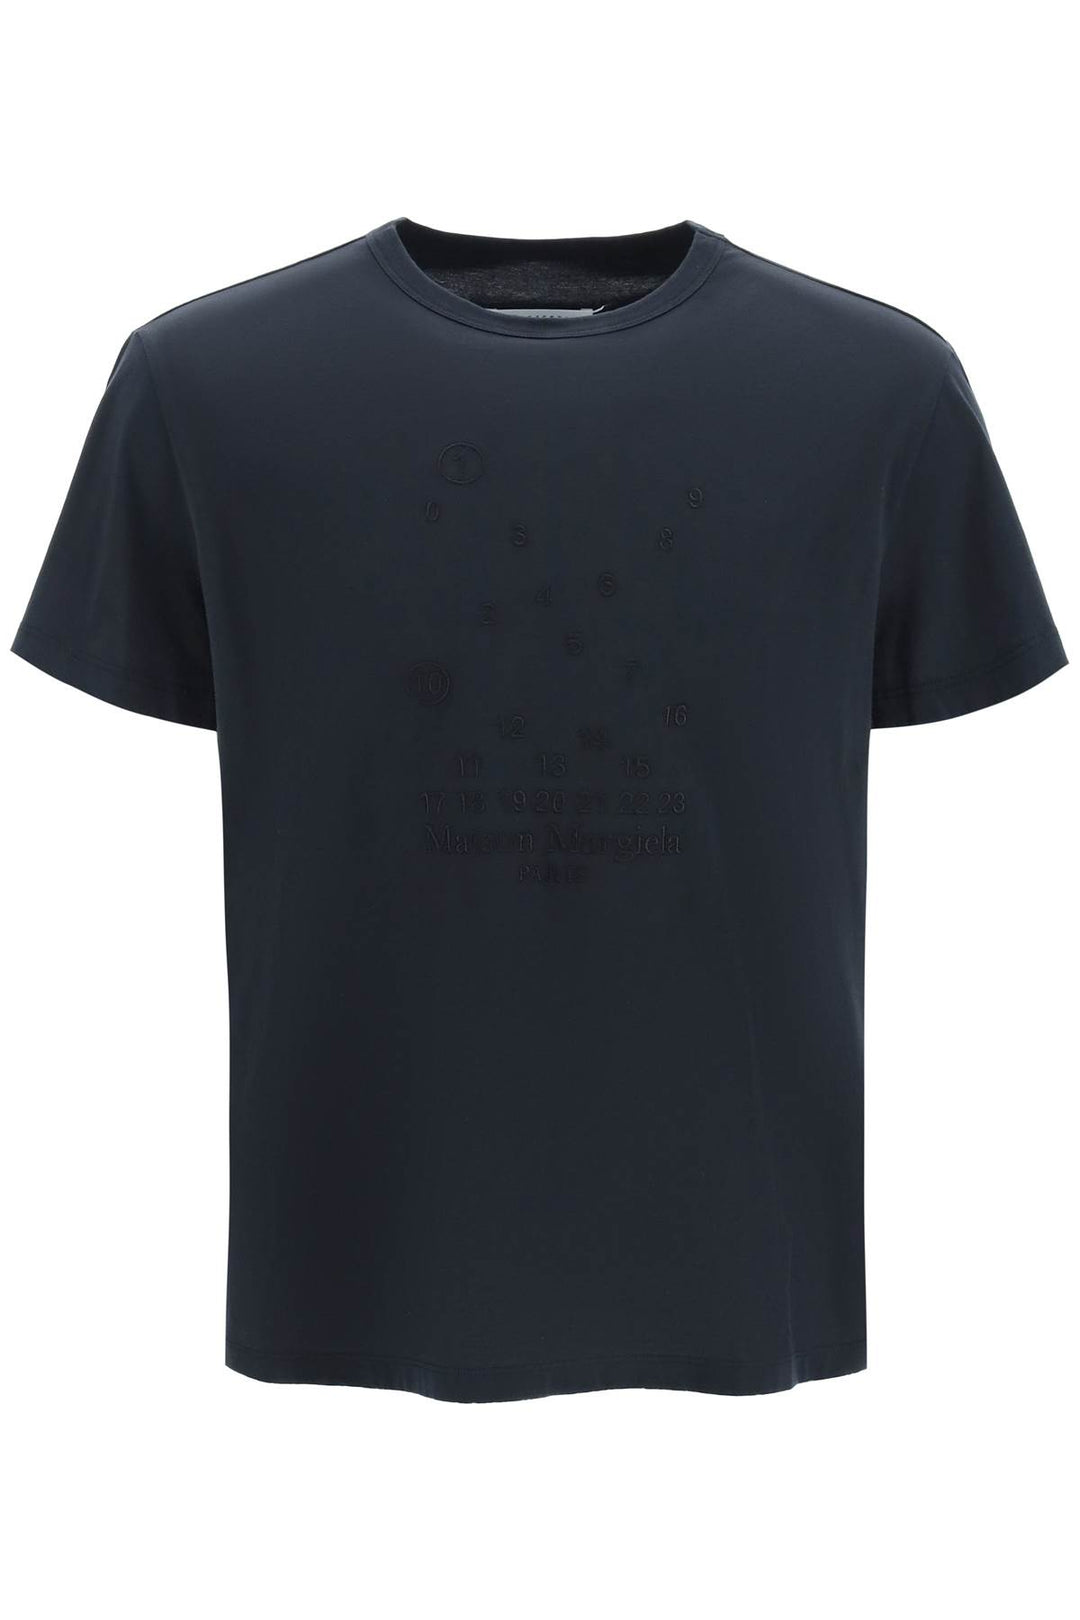 T Shirt Logo Ricamato - Maison Margiela - Uomo